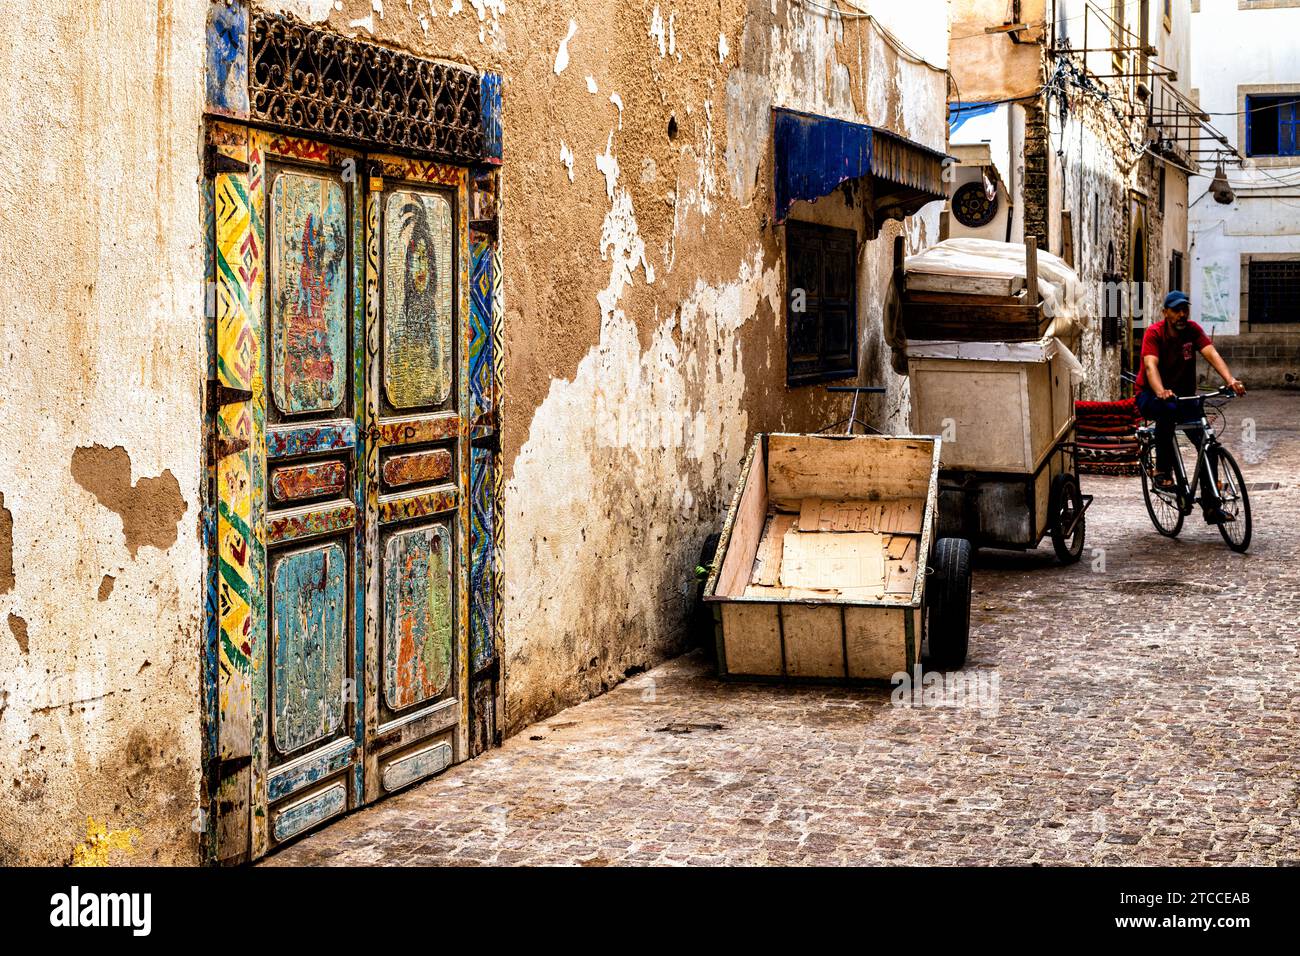 Essaouira, Marocco: Porta di legno colorata che si affaccia su uno stretto vicolo all'interno della Medina della città. Paesaggio urbano marocchino. Foto Stock